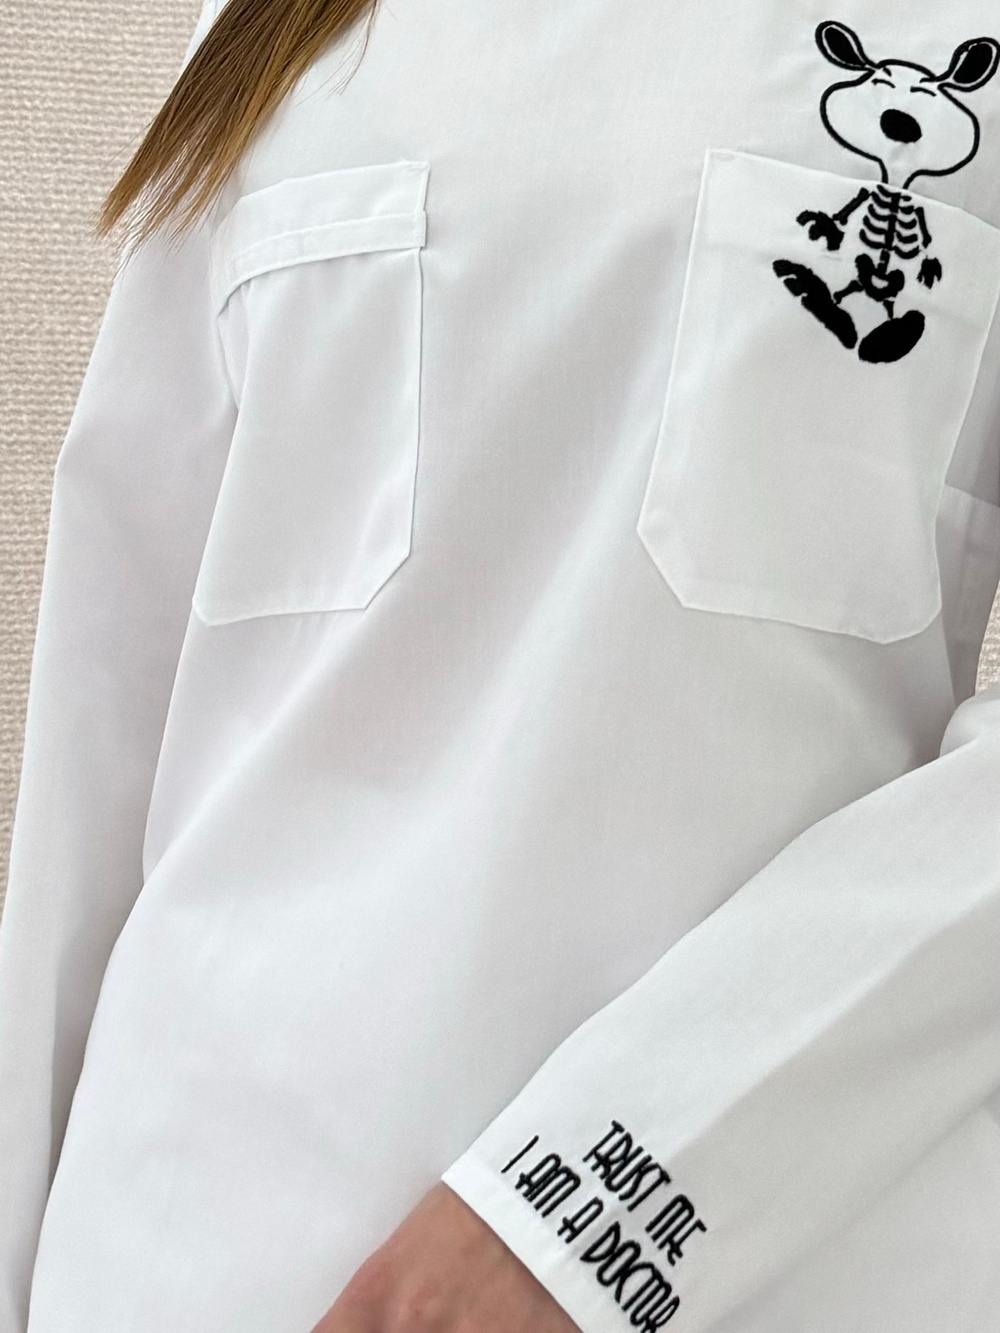 Белая медицинская куртка арт.20-08 с вышивкой рентген